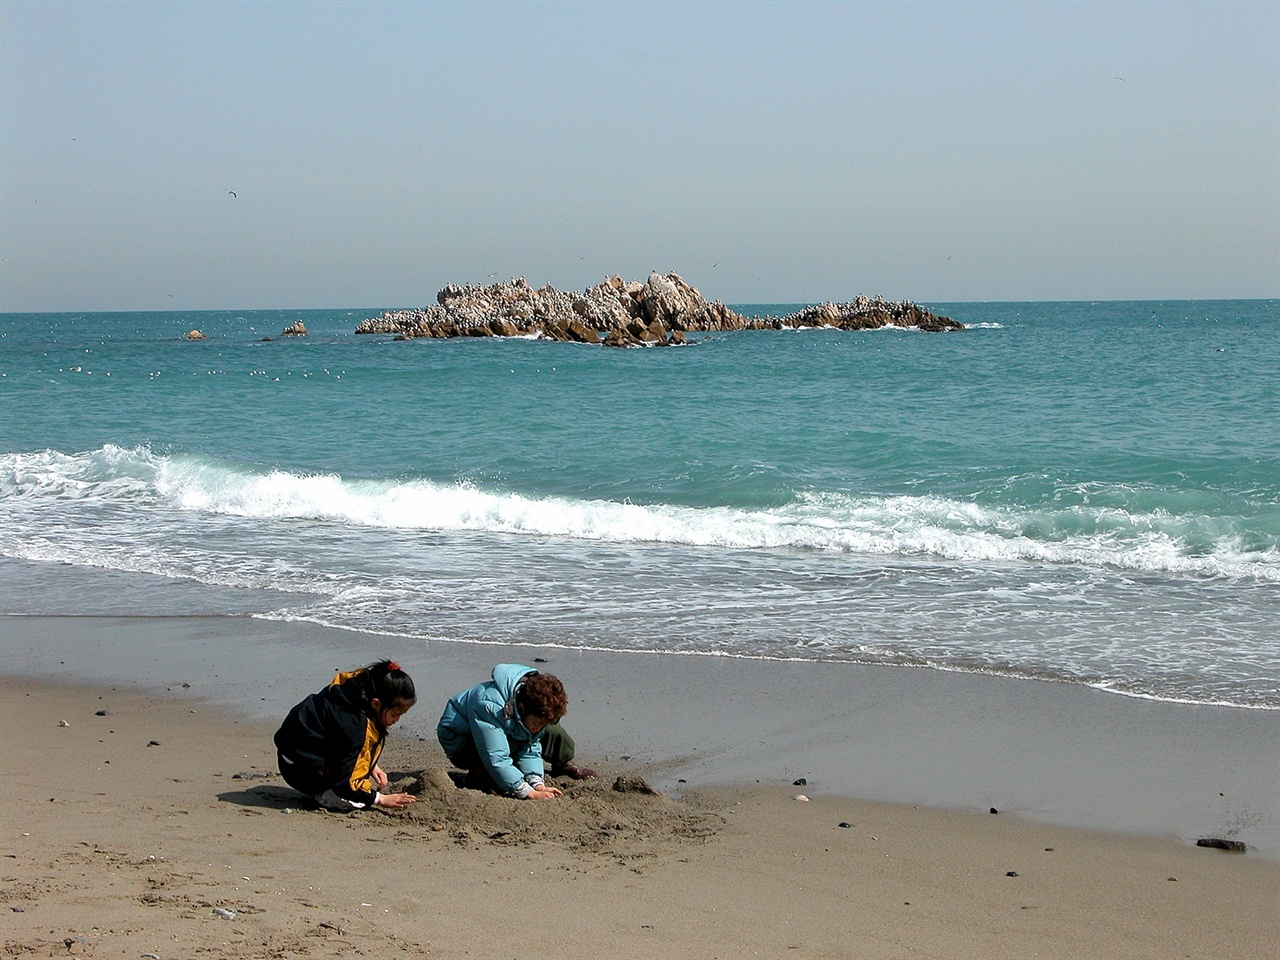 경주 대왕암과 어린이들  추운 겨울에도 아이들은 모래놀이를 즐긴다. 답사보다 바다와 모래가 좋은 아이들의 동심이다. 이렇듯 대왕암은 이제 평화의 상징이 되어야 한다. 